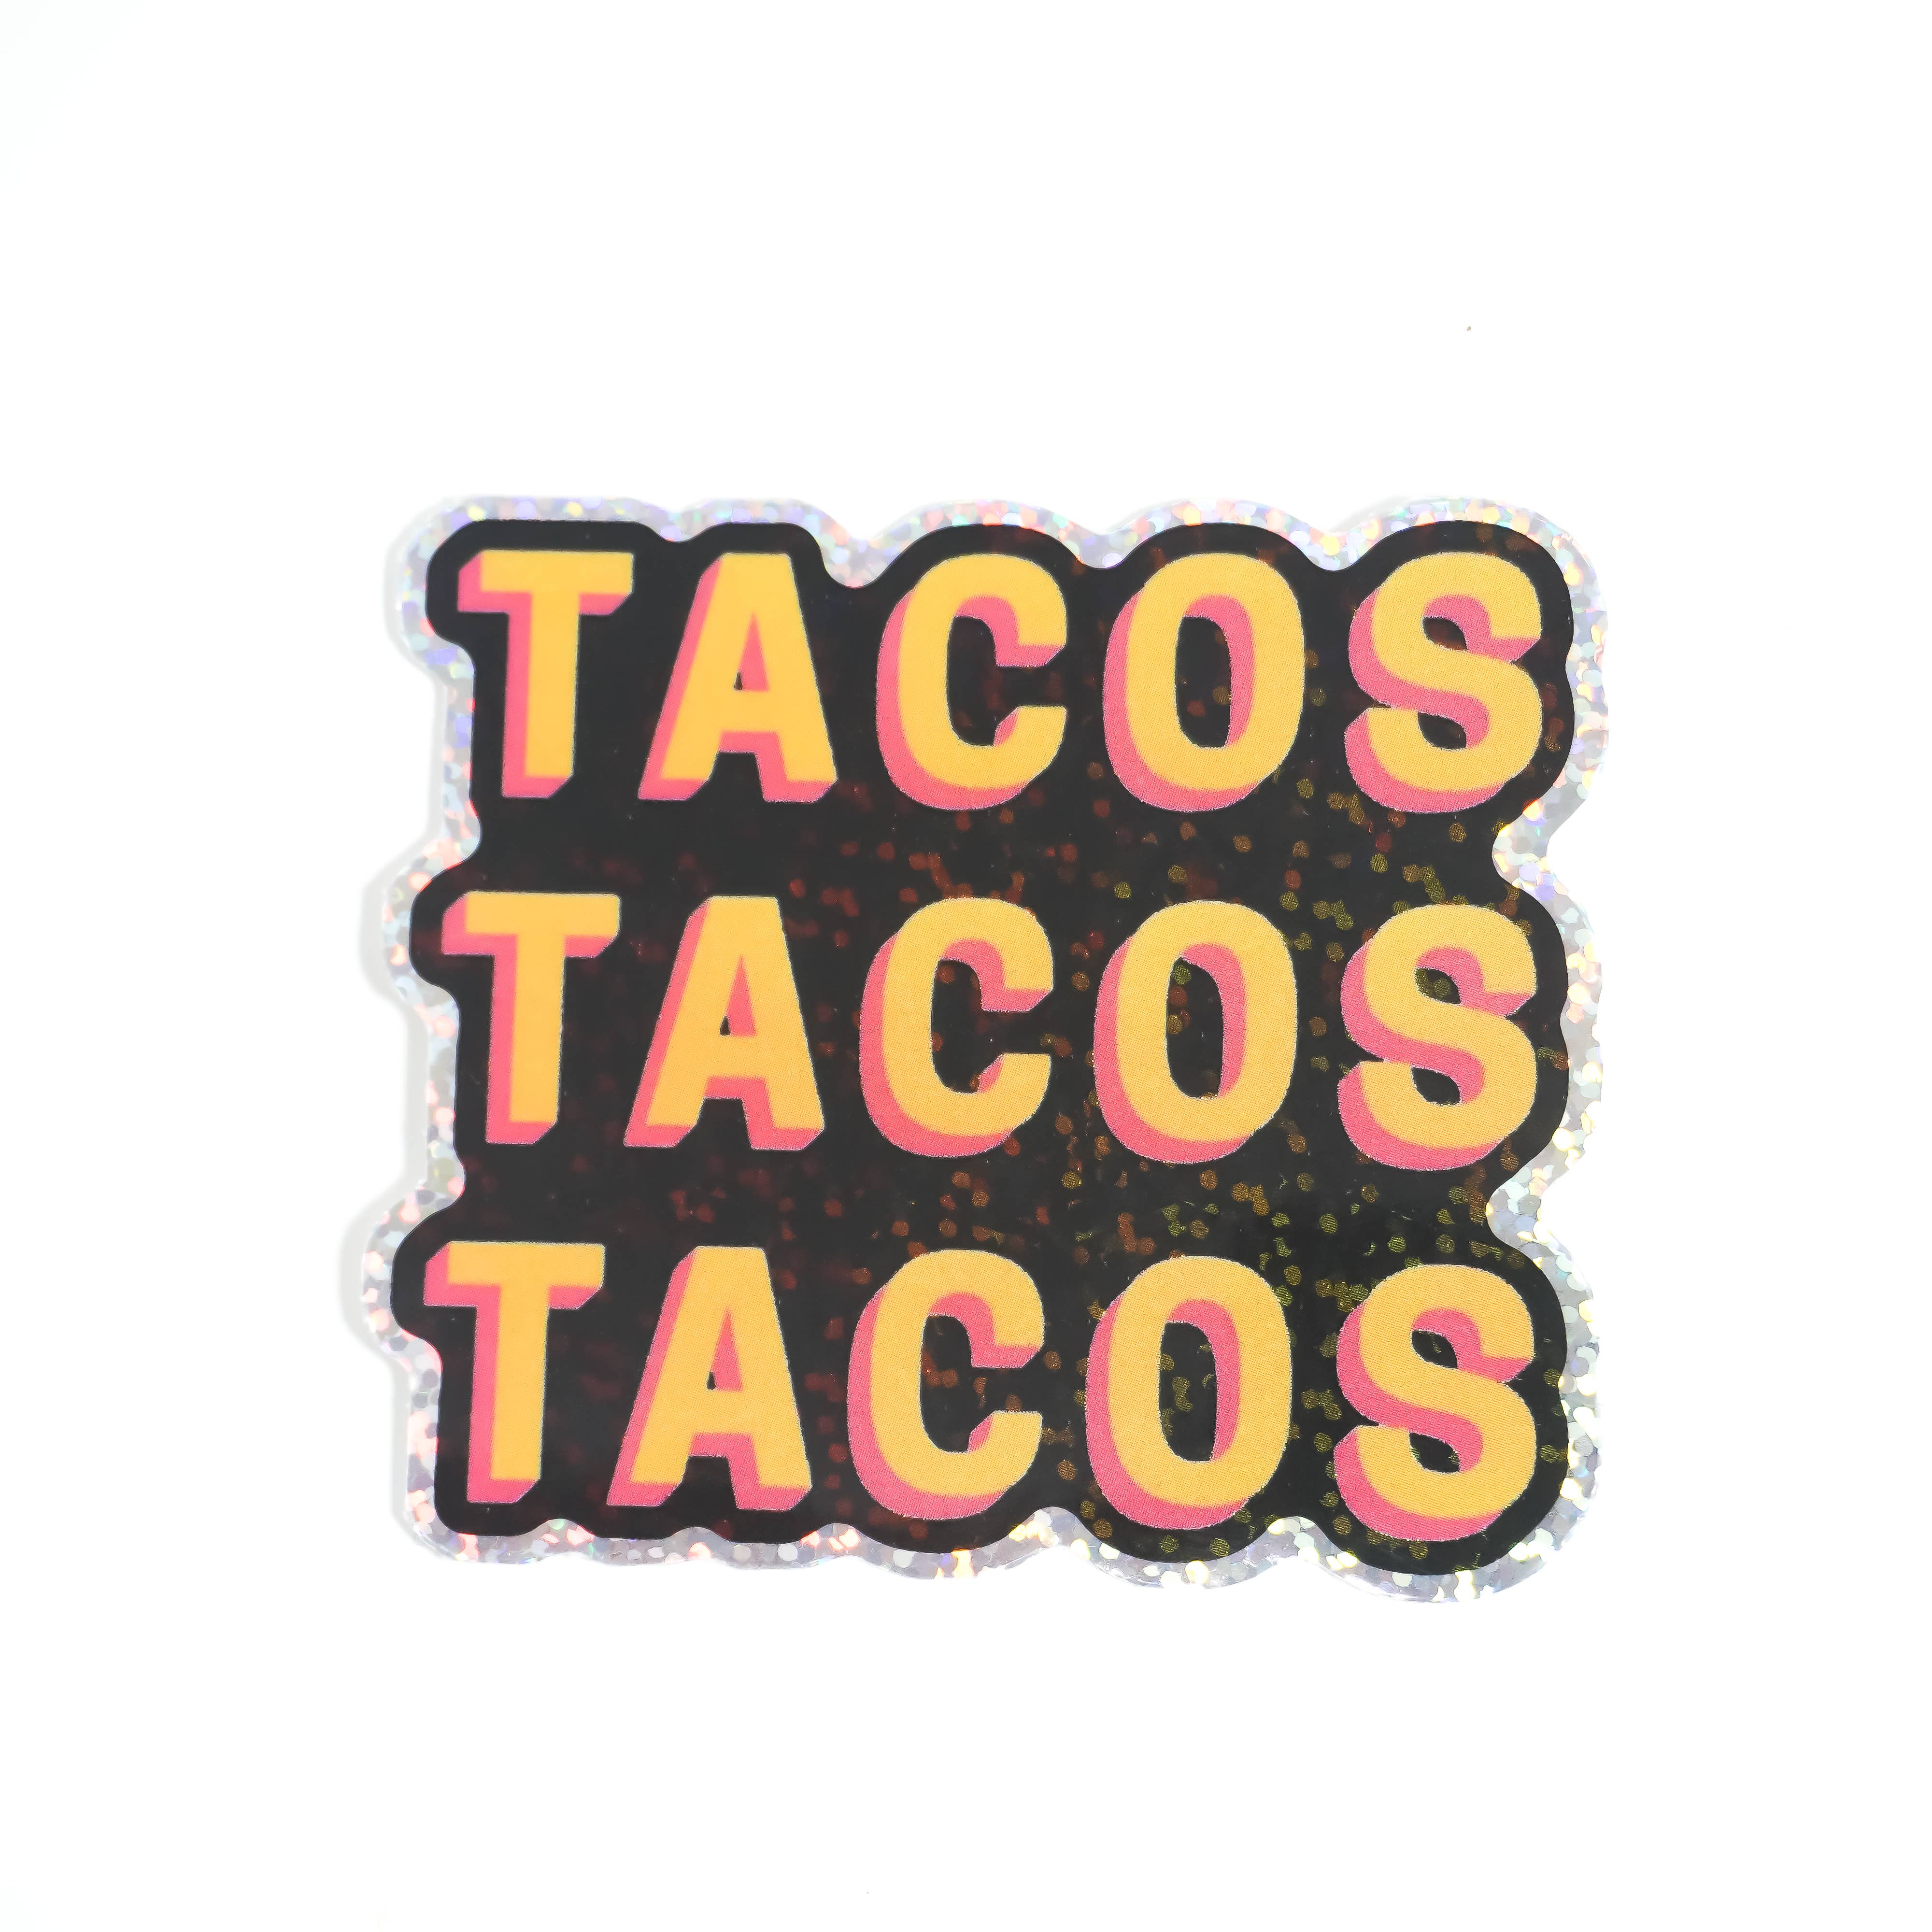 Tacos Tacos Tacos Sticker